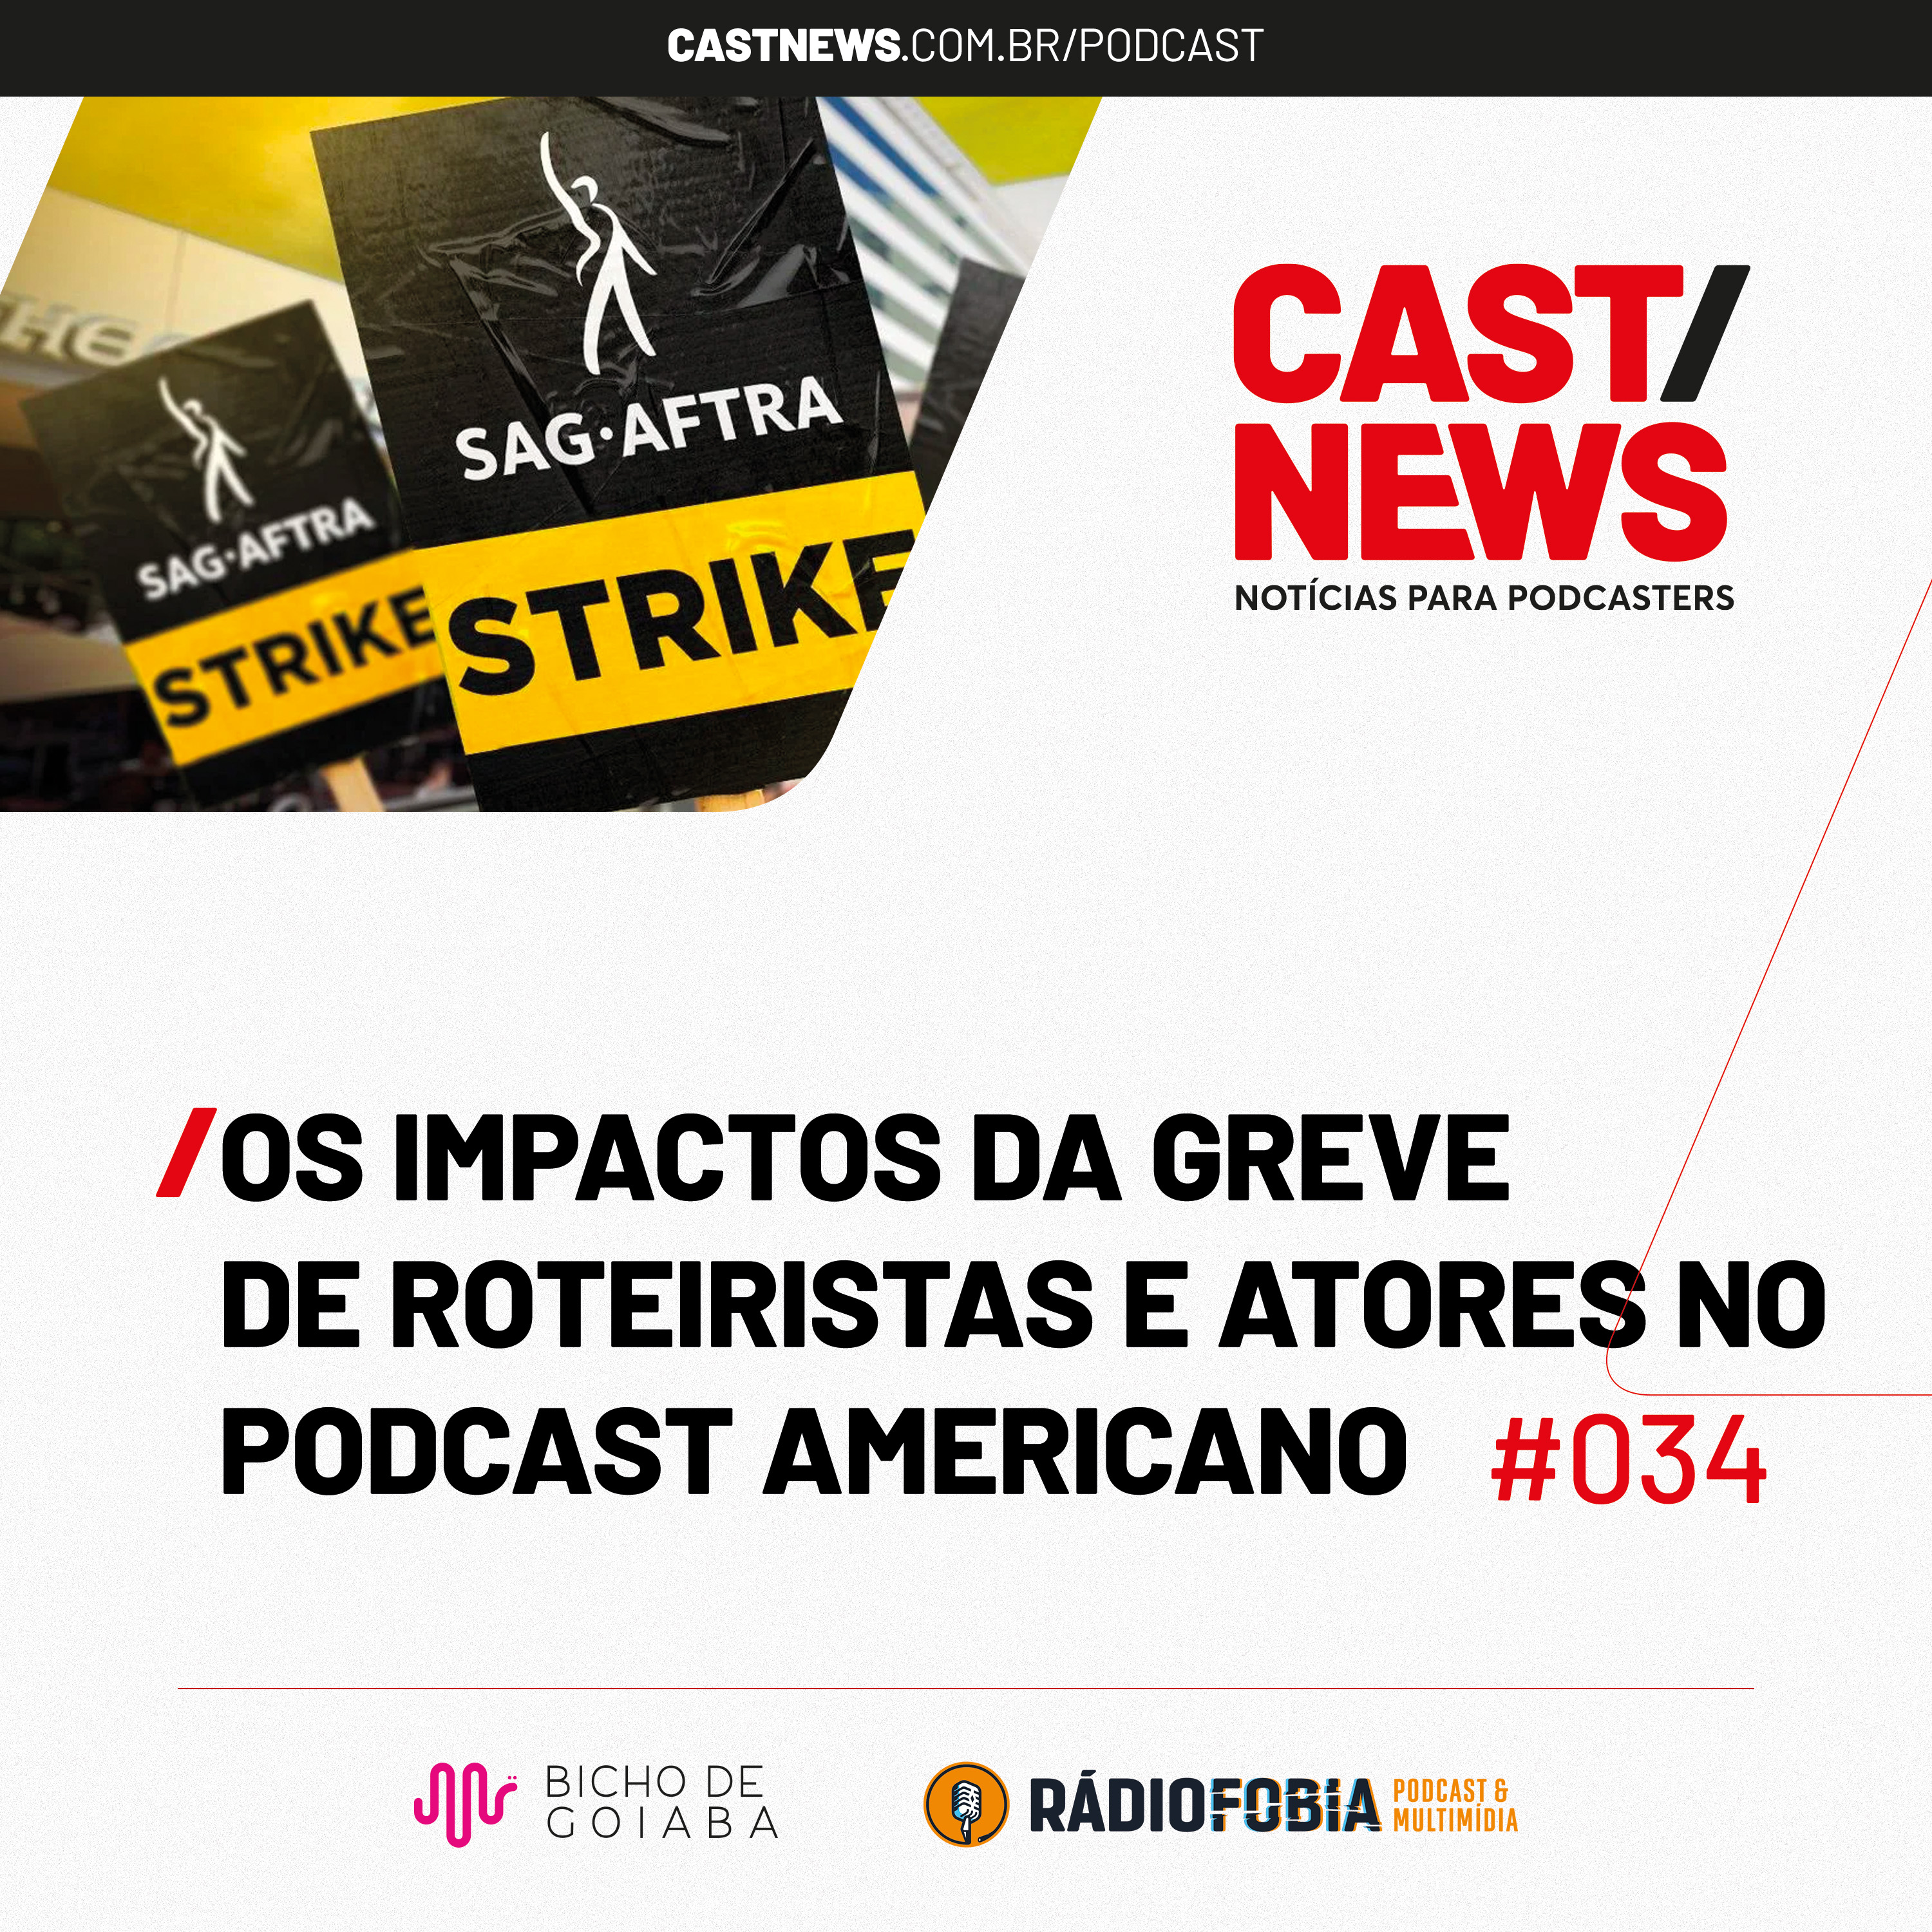 CASTNEWS #034 - Os impactos da greve de roteiristas e atores no podcast americano